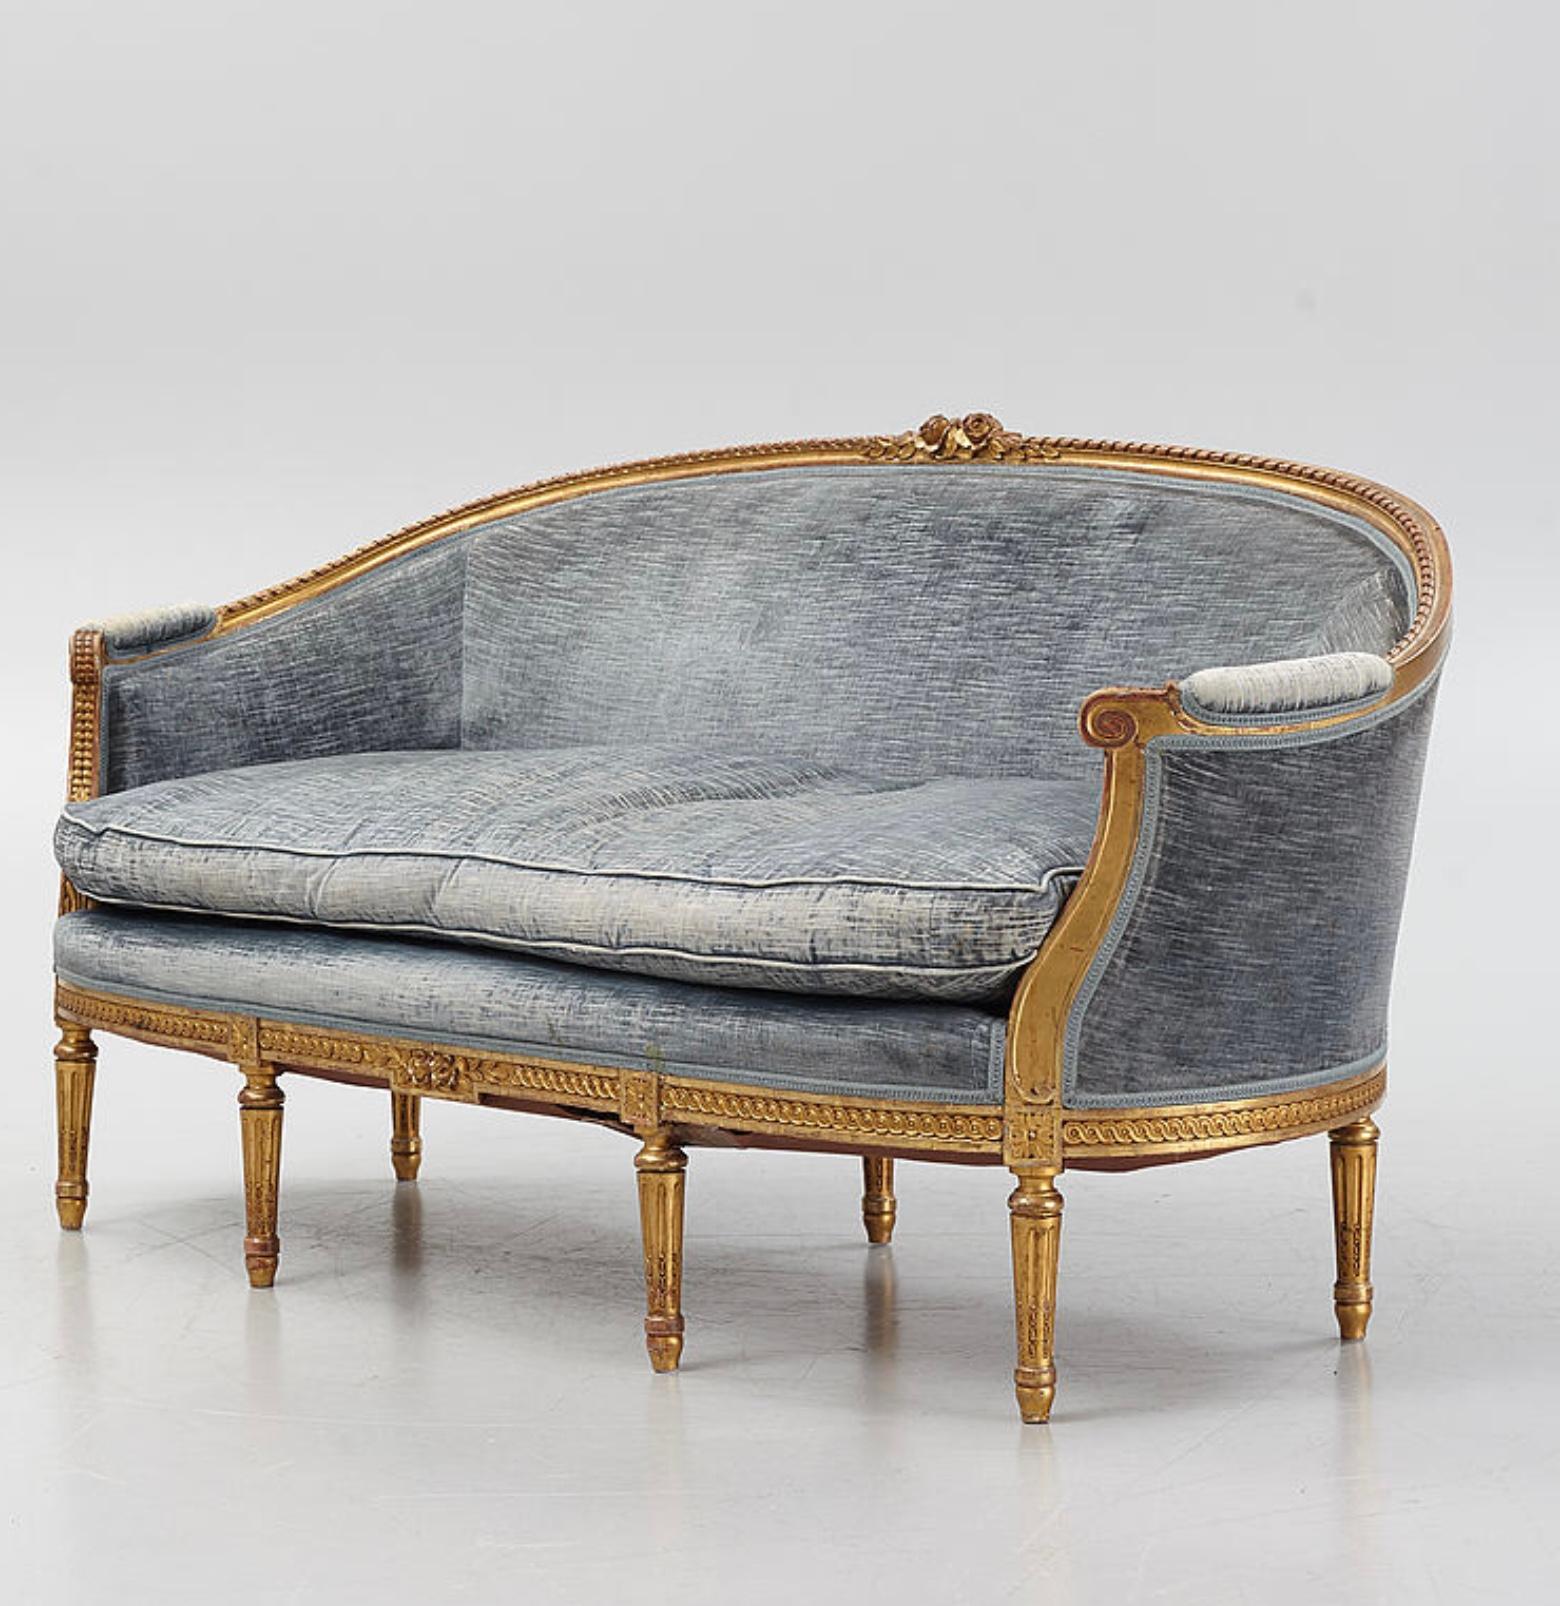 Ce canapé suédois doré à deux places, merveilleusement grand et confortable, date des années 1900 et est conçu dans le style gustavien.
Le canapé présente un décor classique de fleurs et de feuilles sculptées au centre et son dossier est légèrement